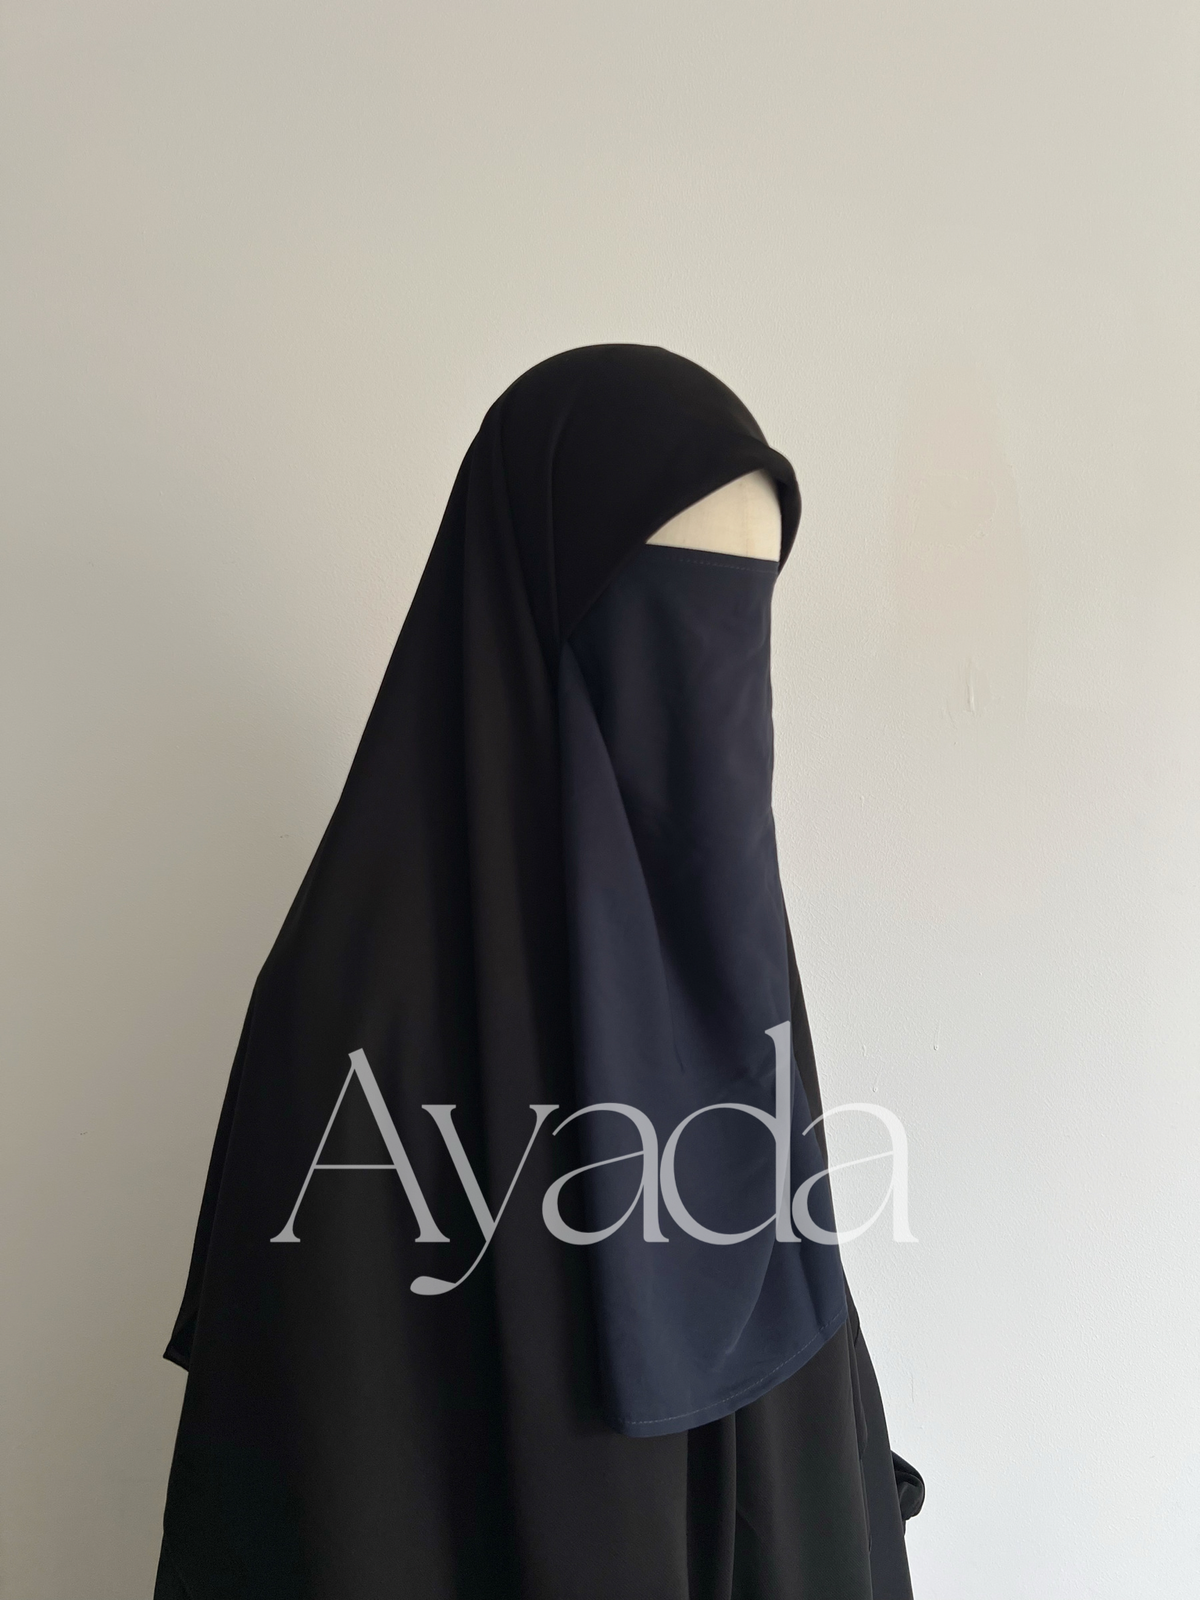 Half Niqab